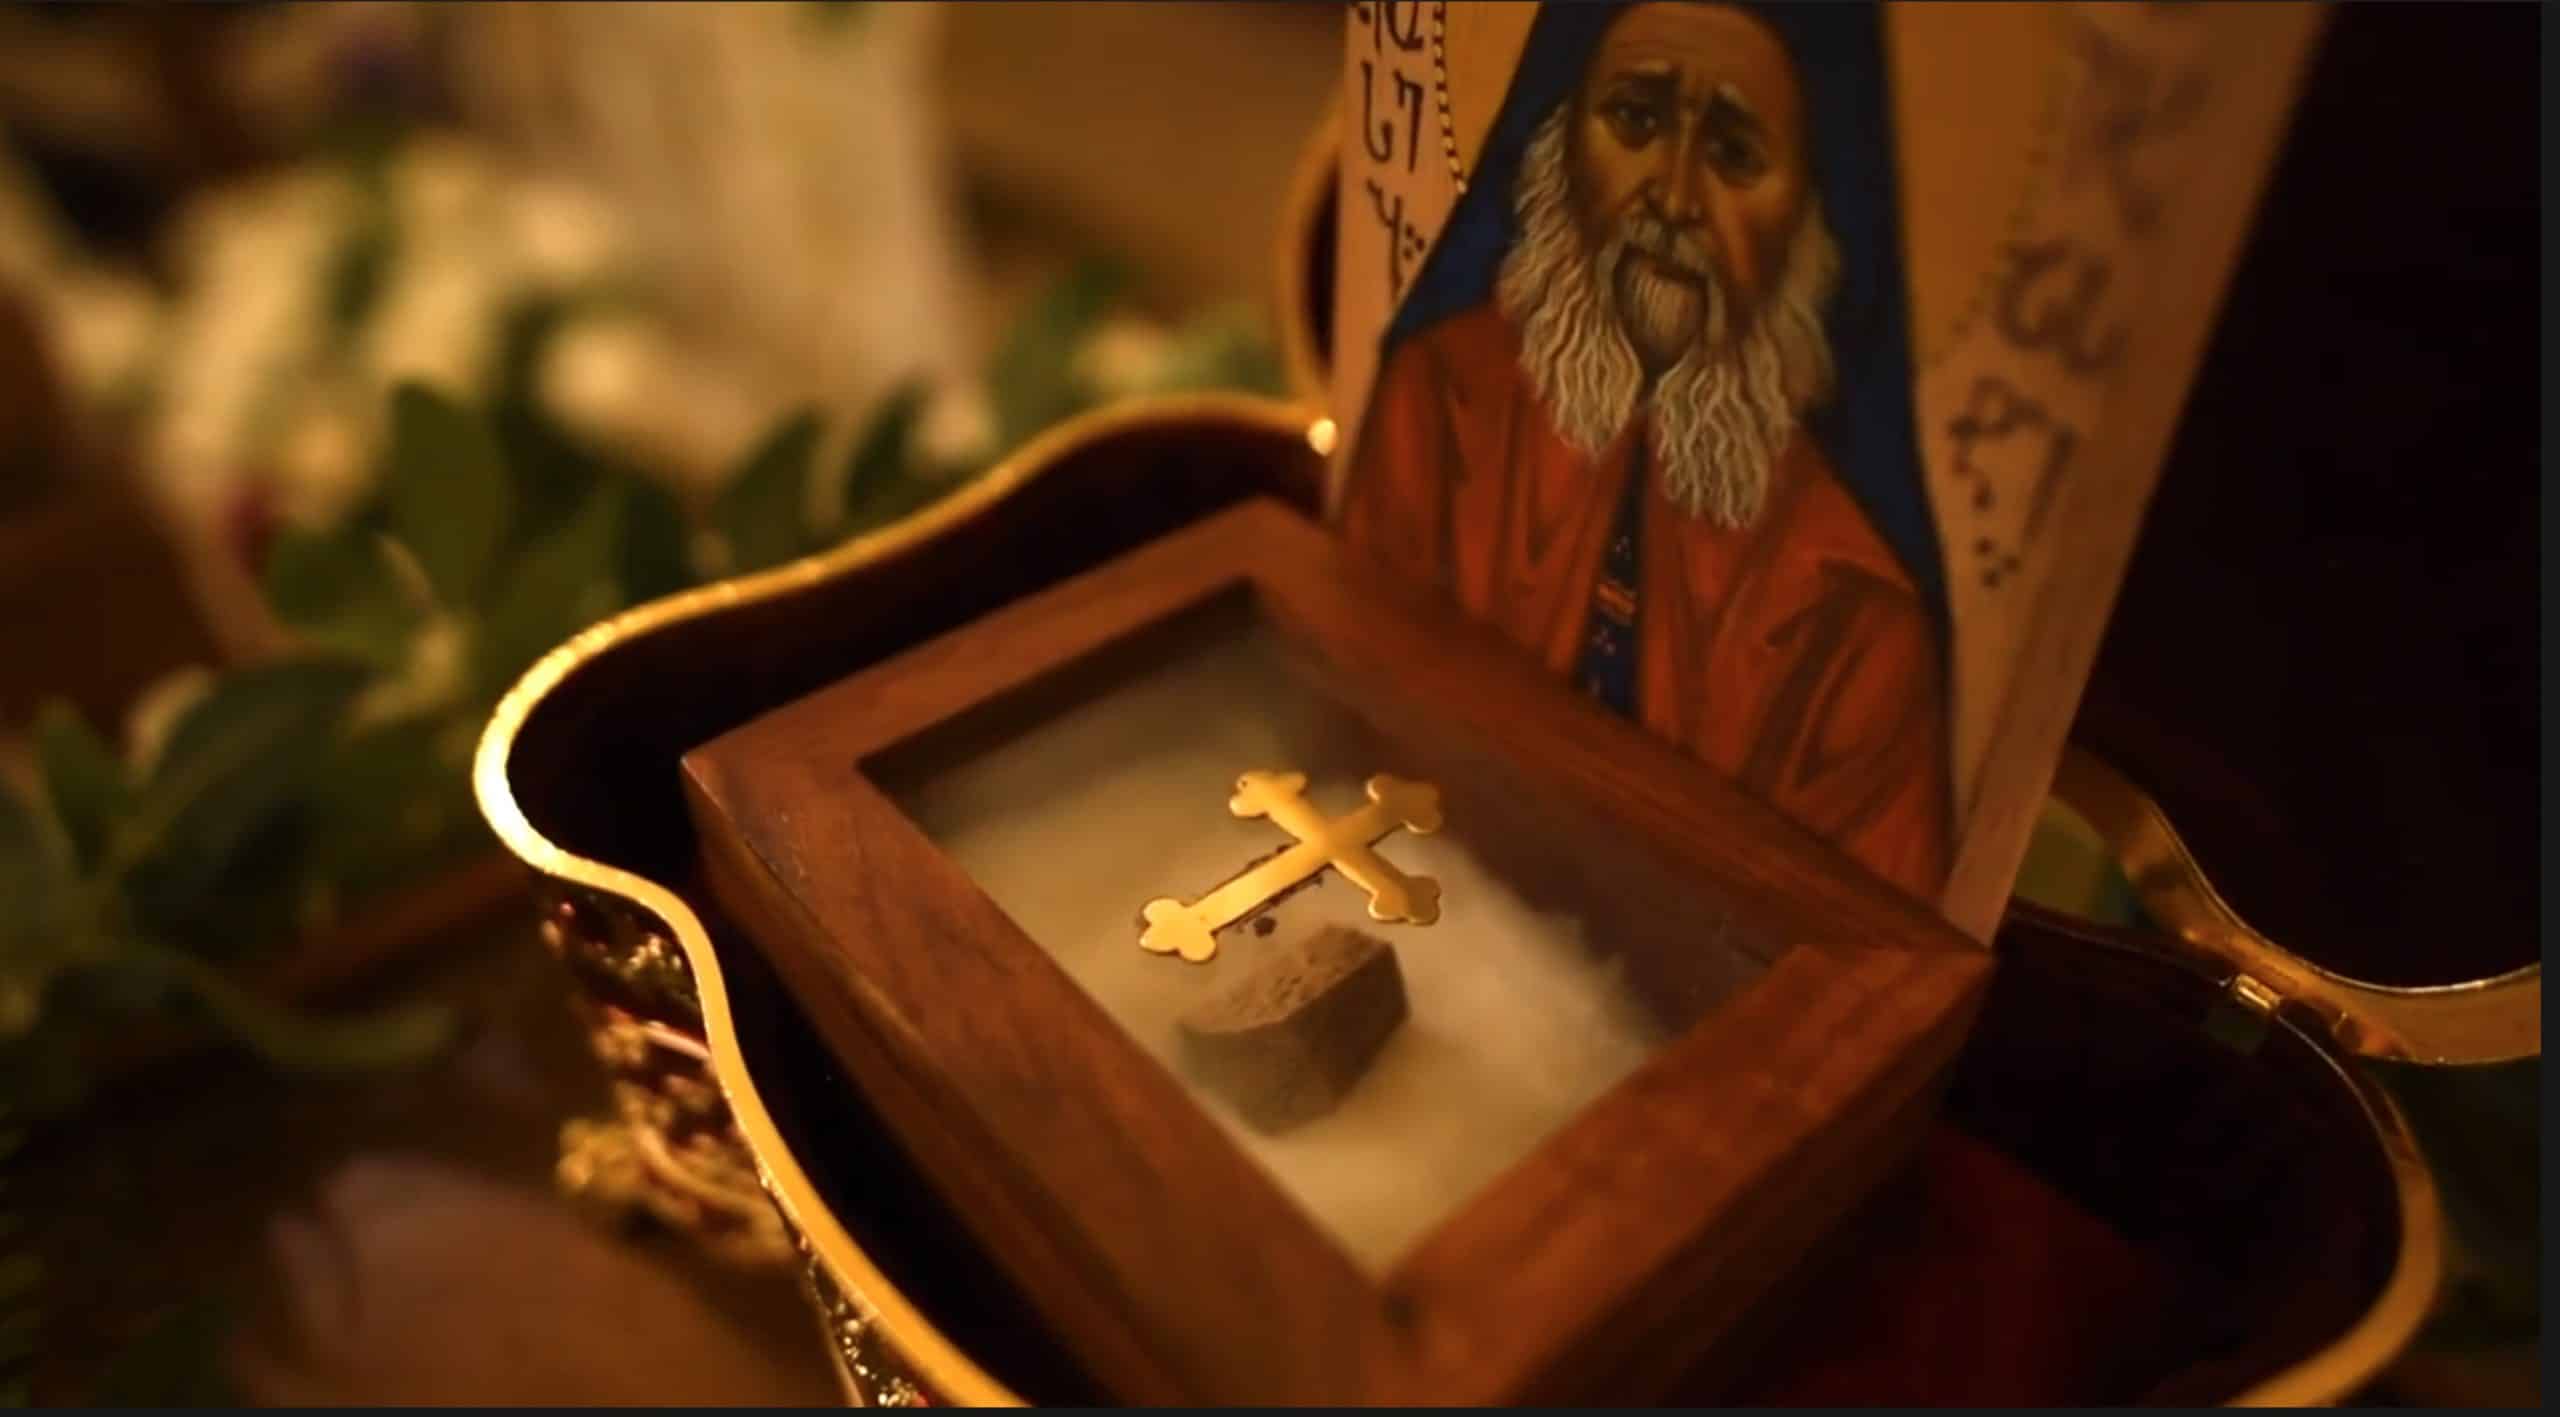 Vidéo : réception des reliques de saint joseph l’hésychaste à tbilissi